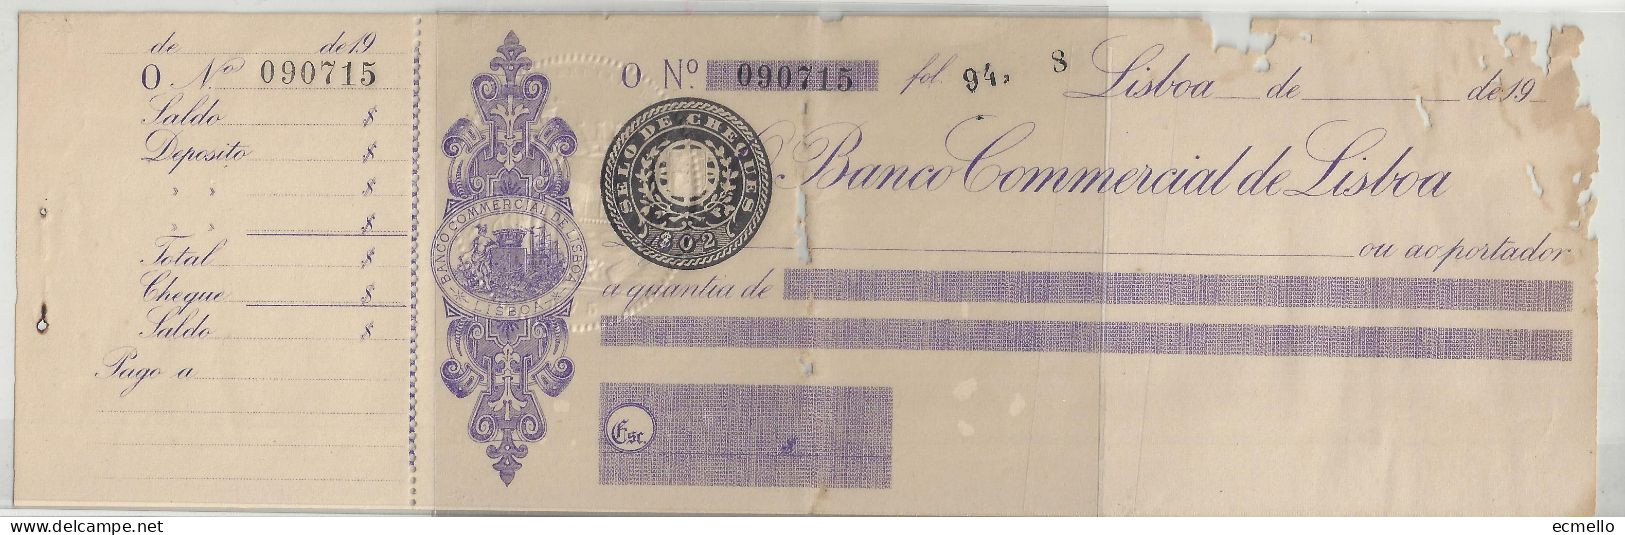 PORTUGAL CHEQUE CHECK BANCO COMERCIAL DE LISBOA 1910'S SCARCE - Schecks  Und Reiseschecks